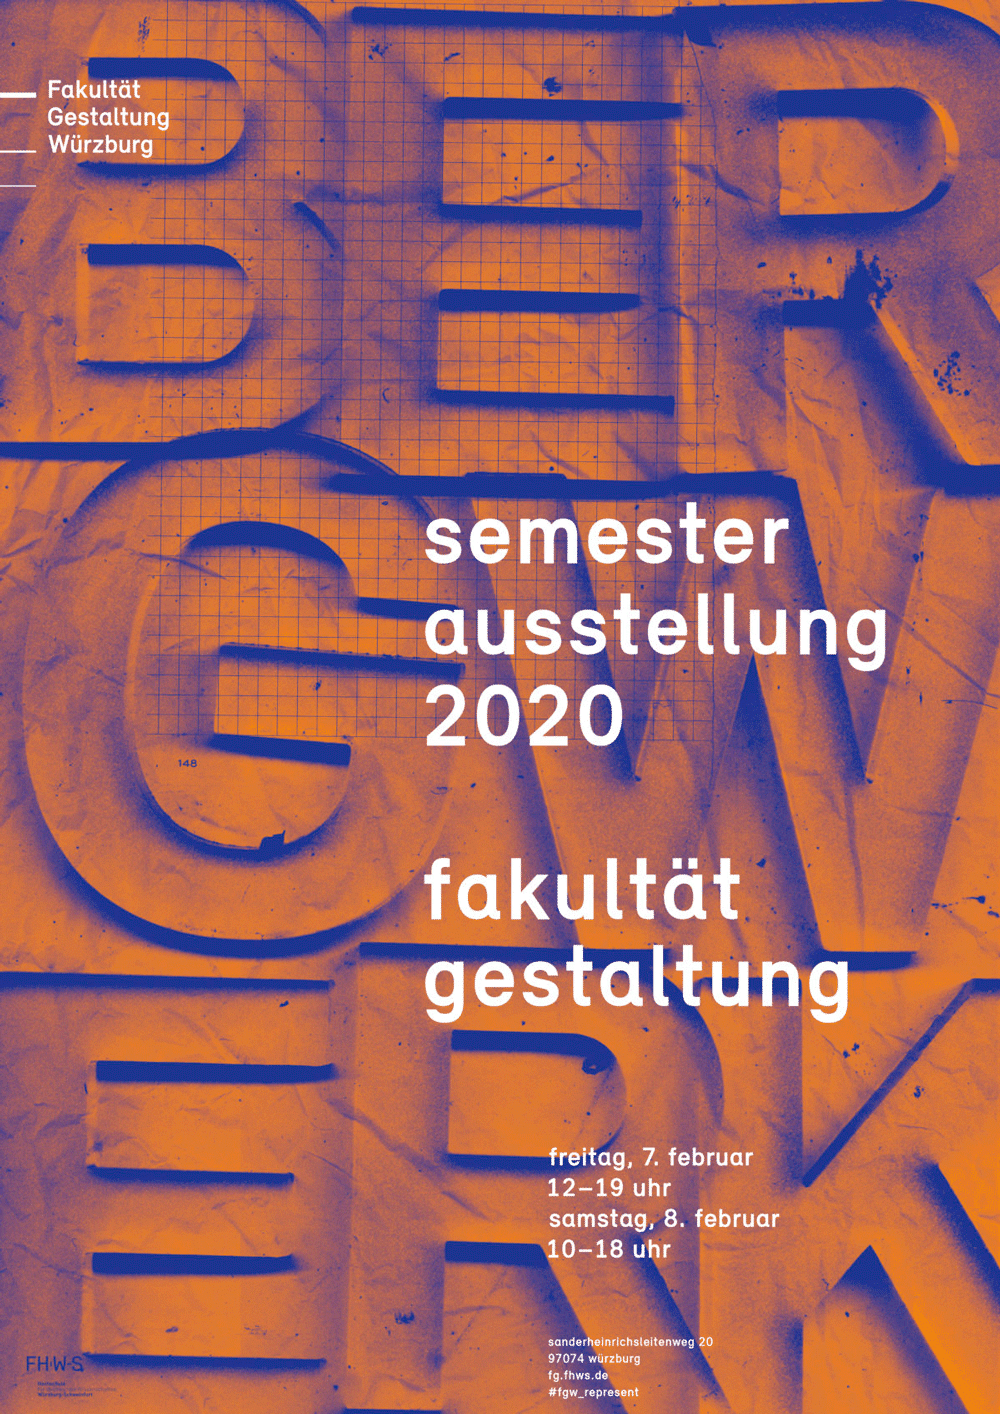 Semesterausstellung 2020 an der FHWS Gestaltung in Würzburg 